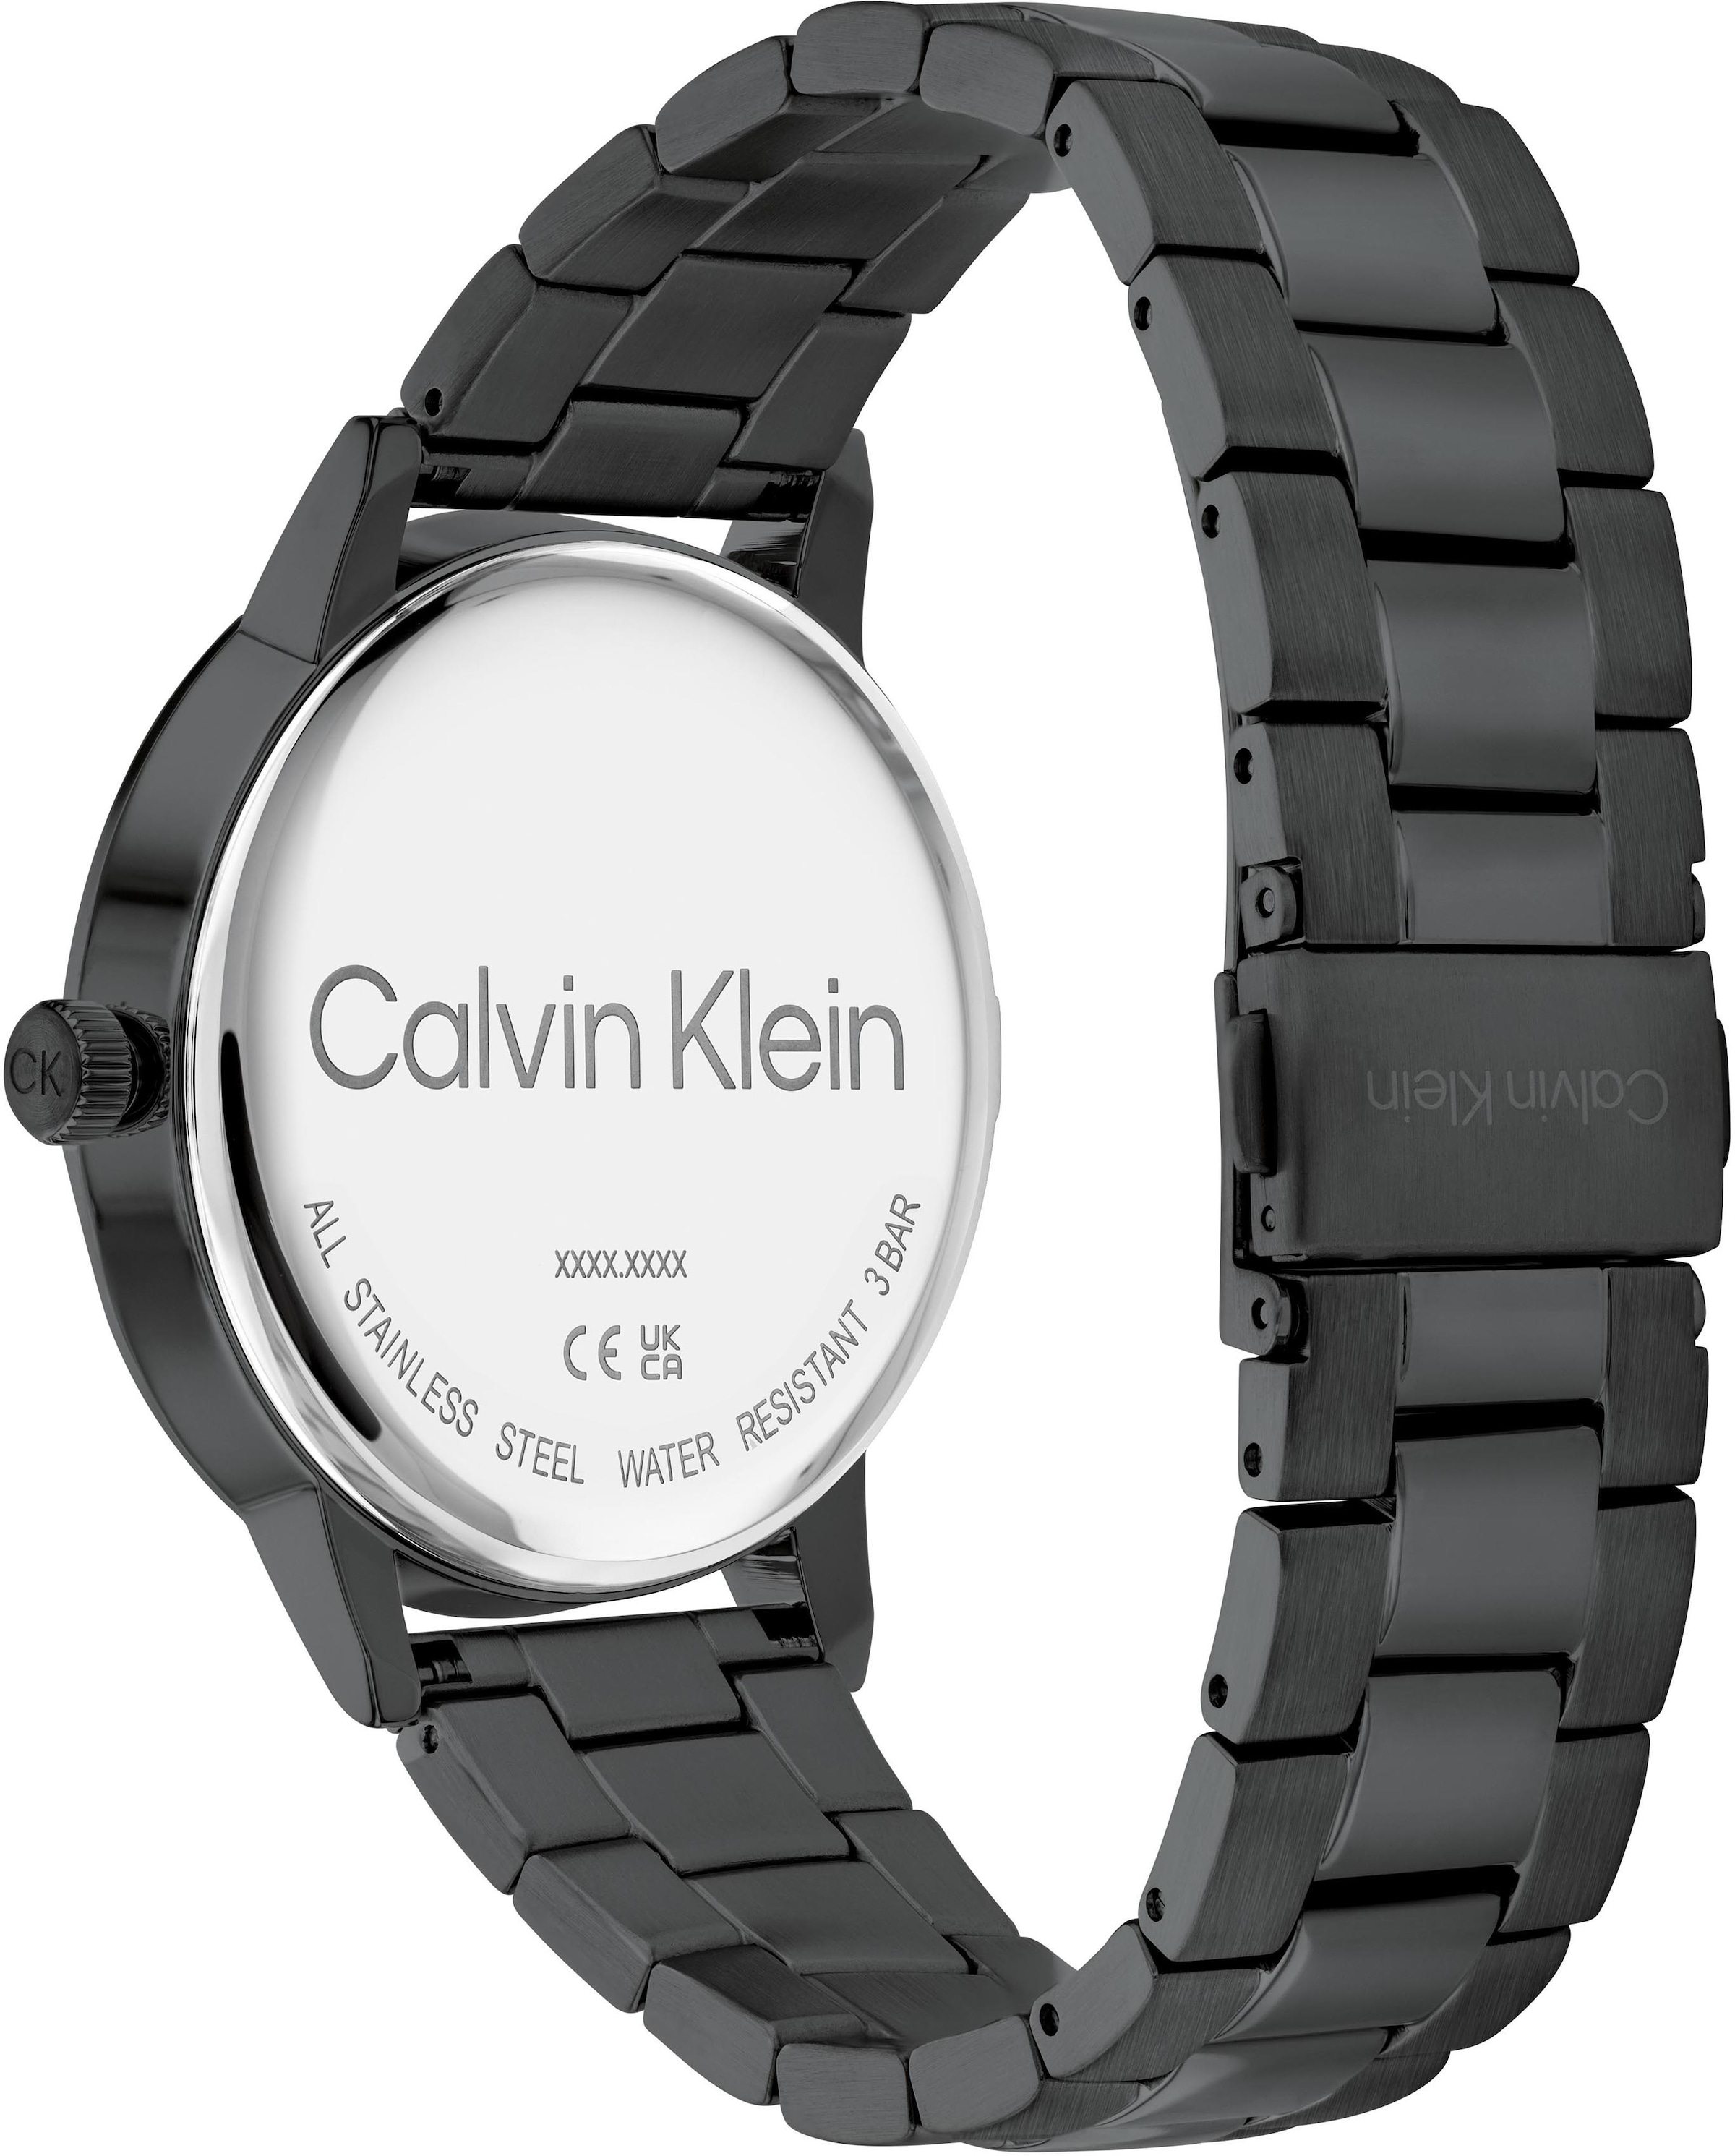 Calvin Klein Quarzuhr »Linked, 25200057« bequem bestellen